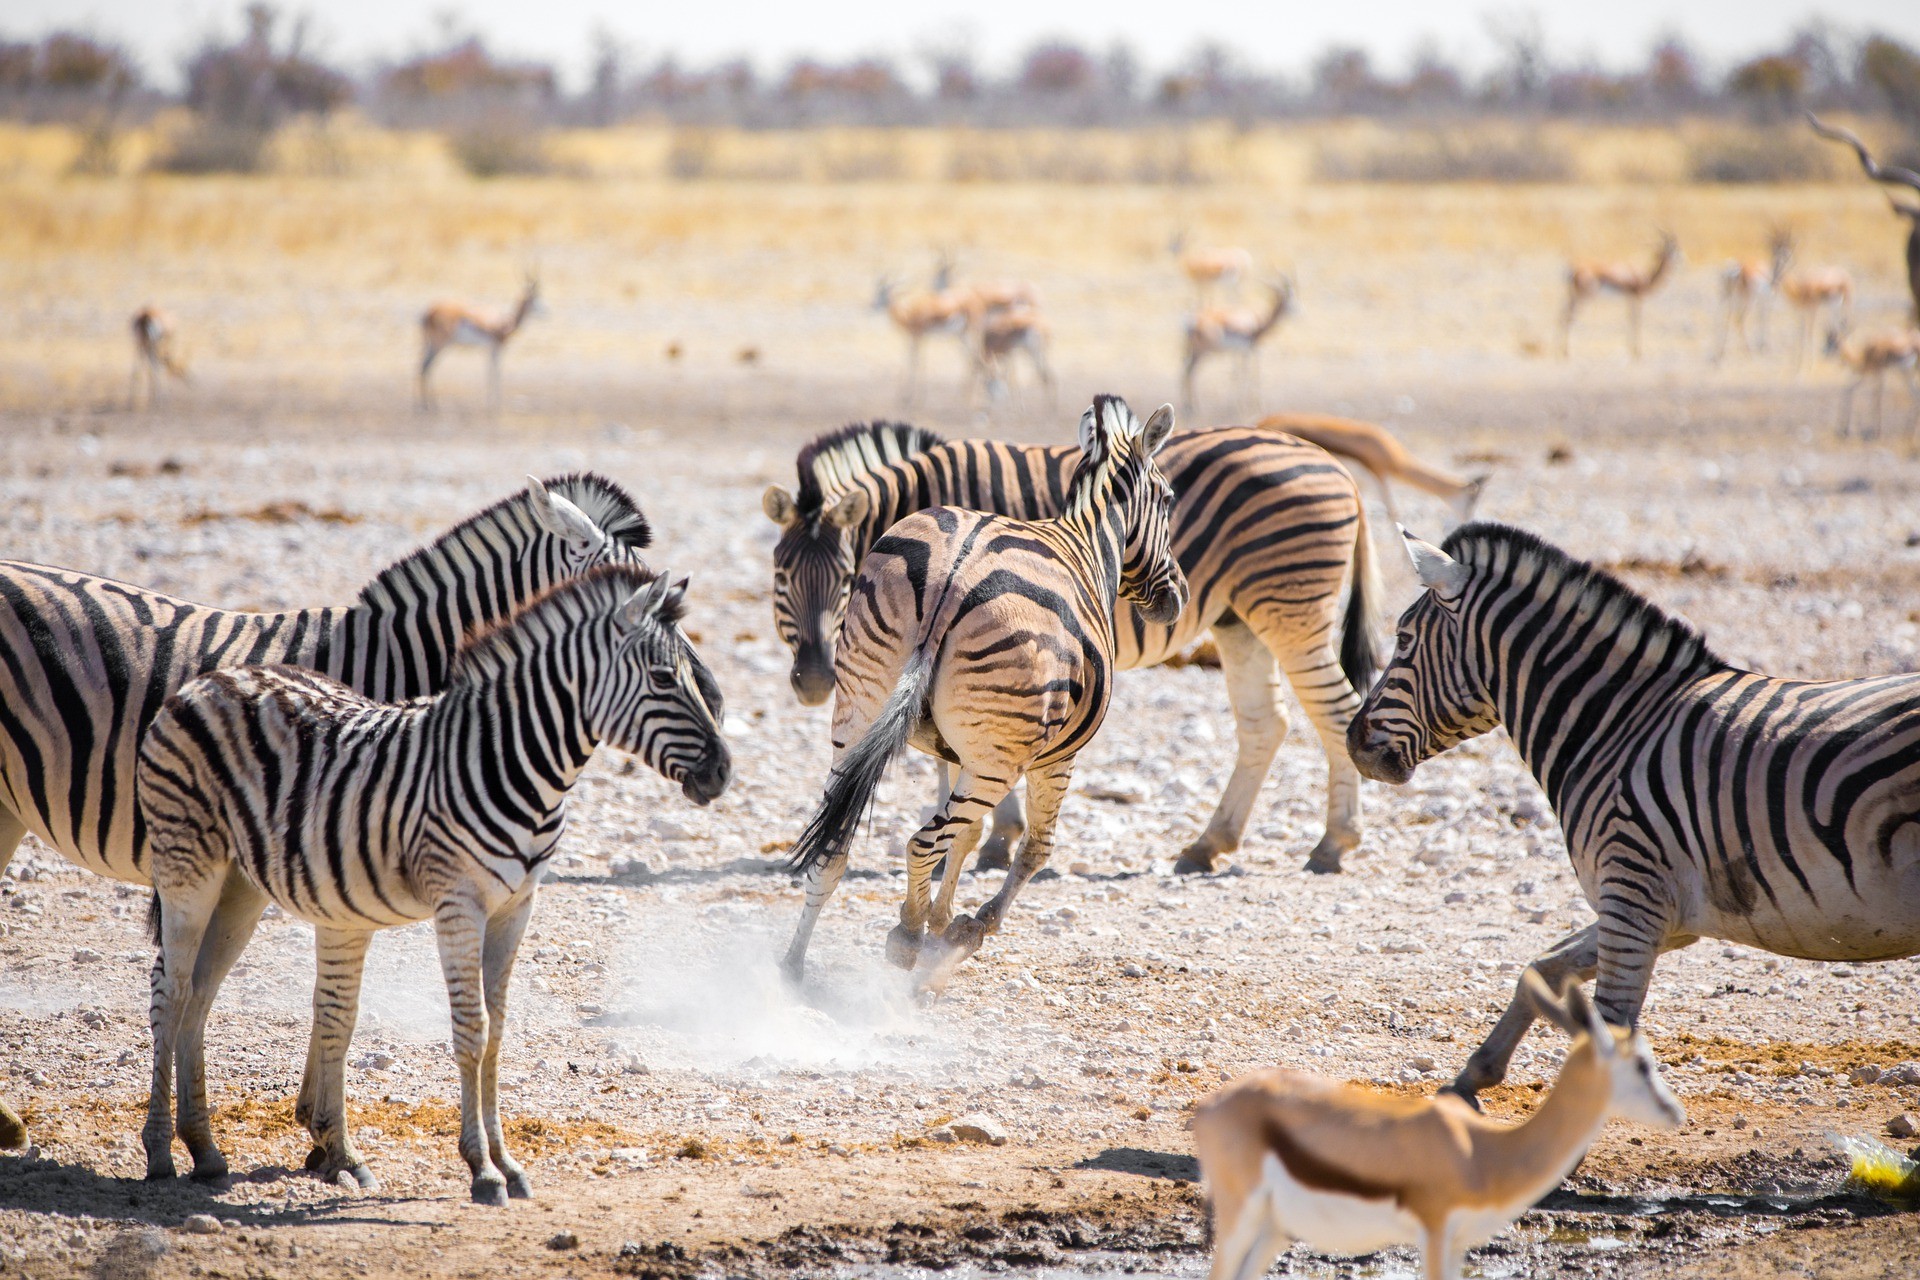 Zebras in Namibia